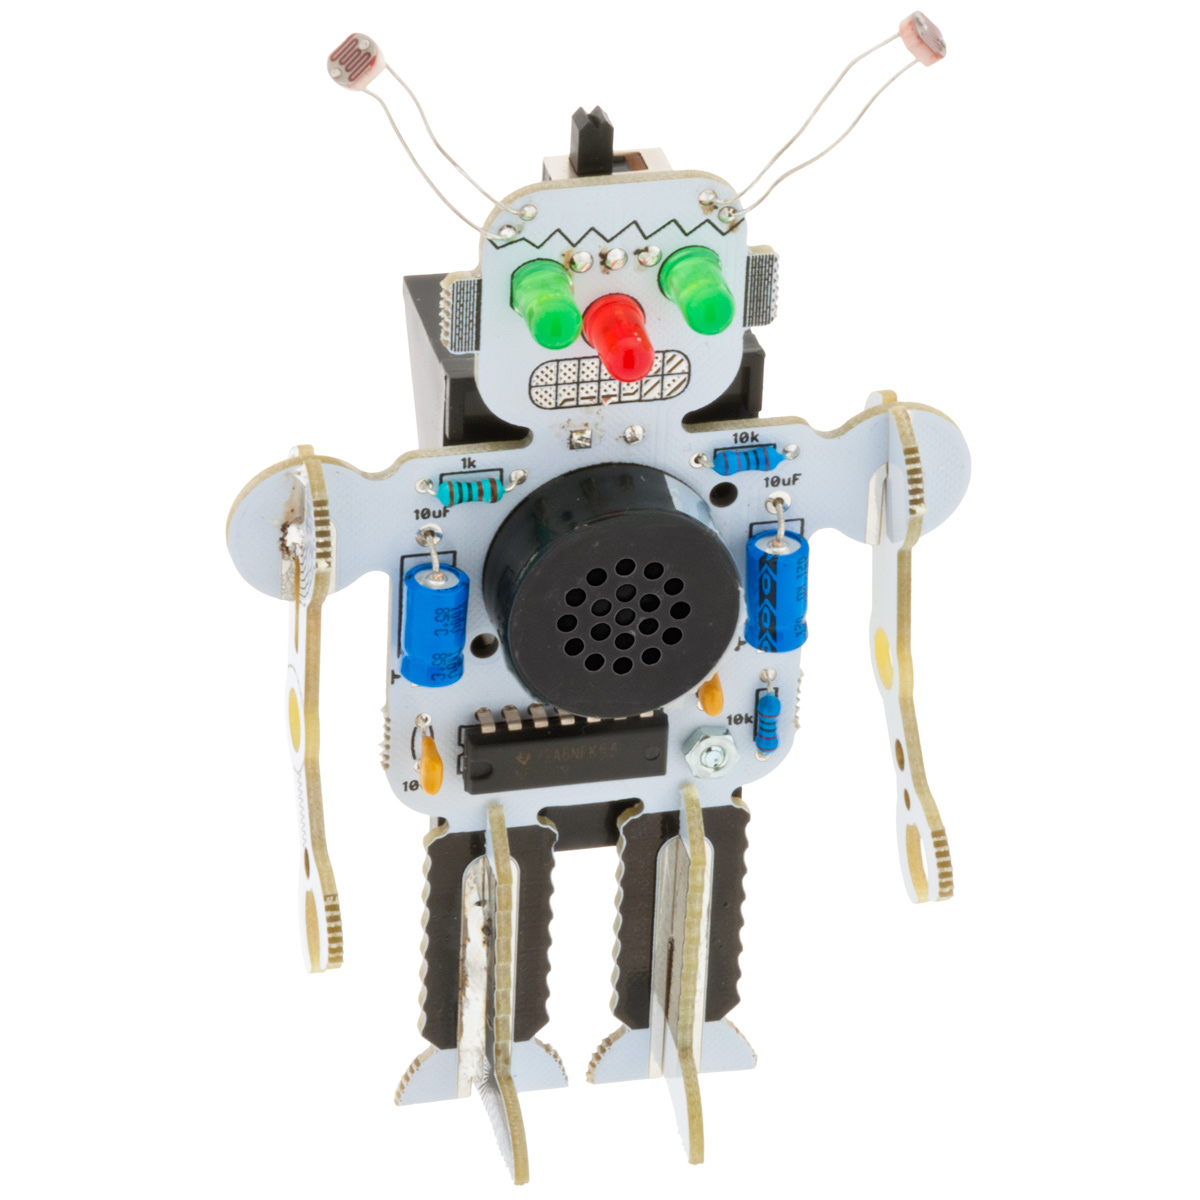 Atari Punk Robot @ electrokit